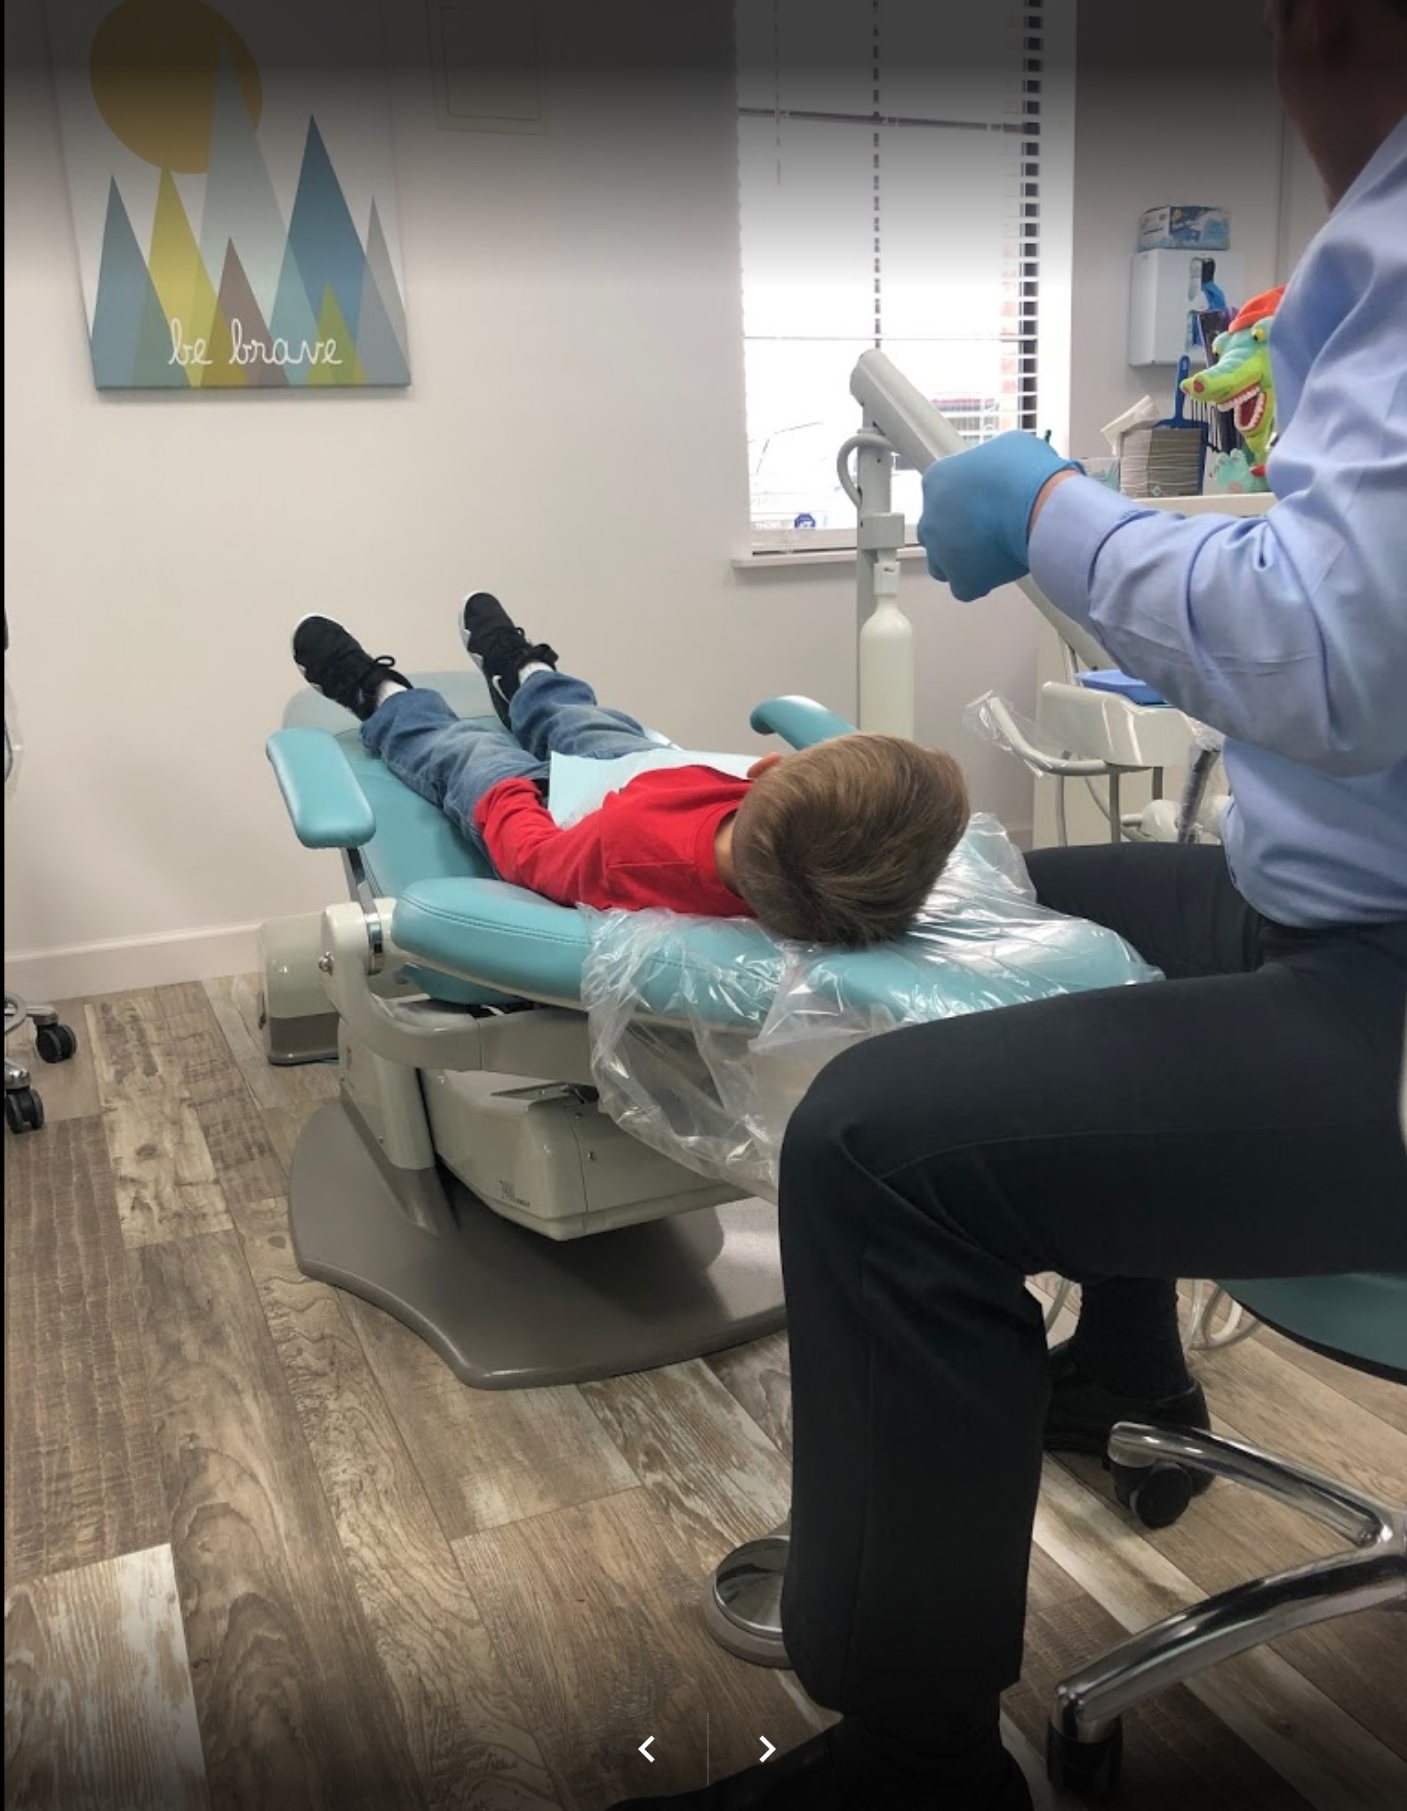 Sheer Smiles Pediatric Dentistry